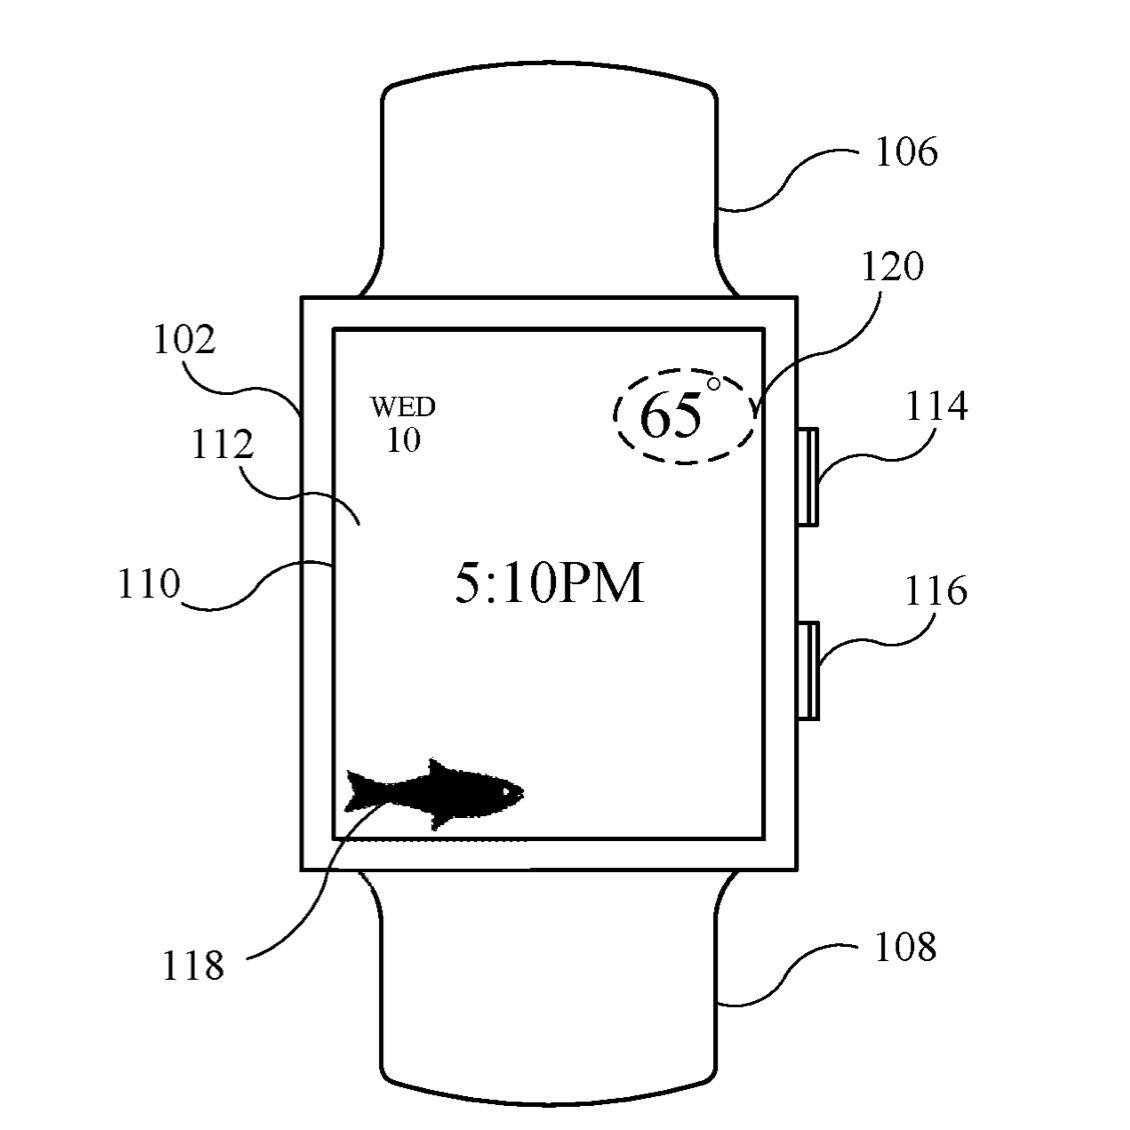 Yeni nesil Apple Watch'larda köpekbalığı algılama özelliği olabilir